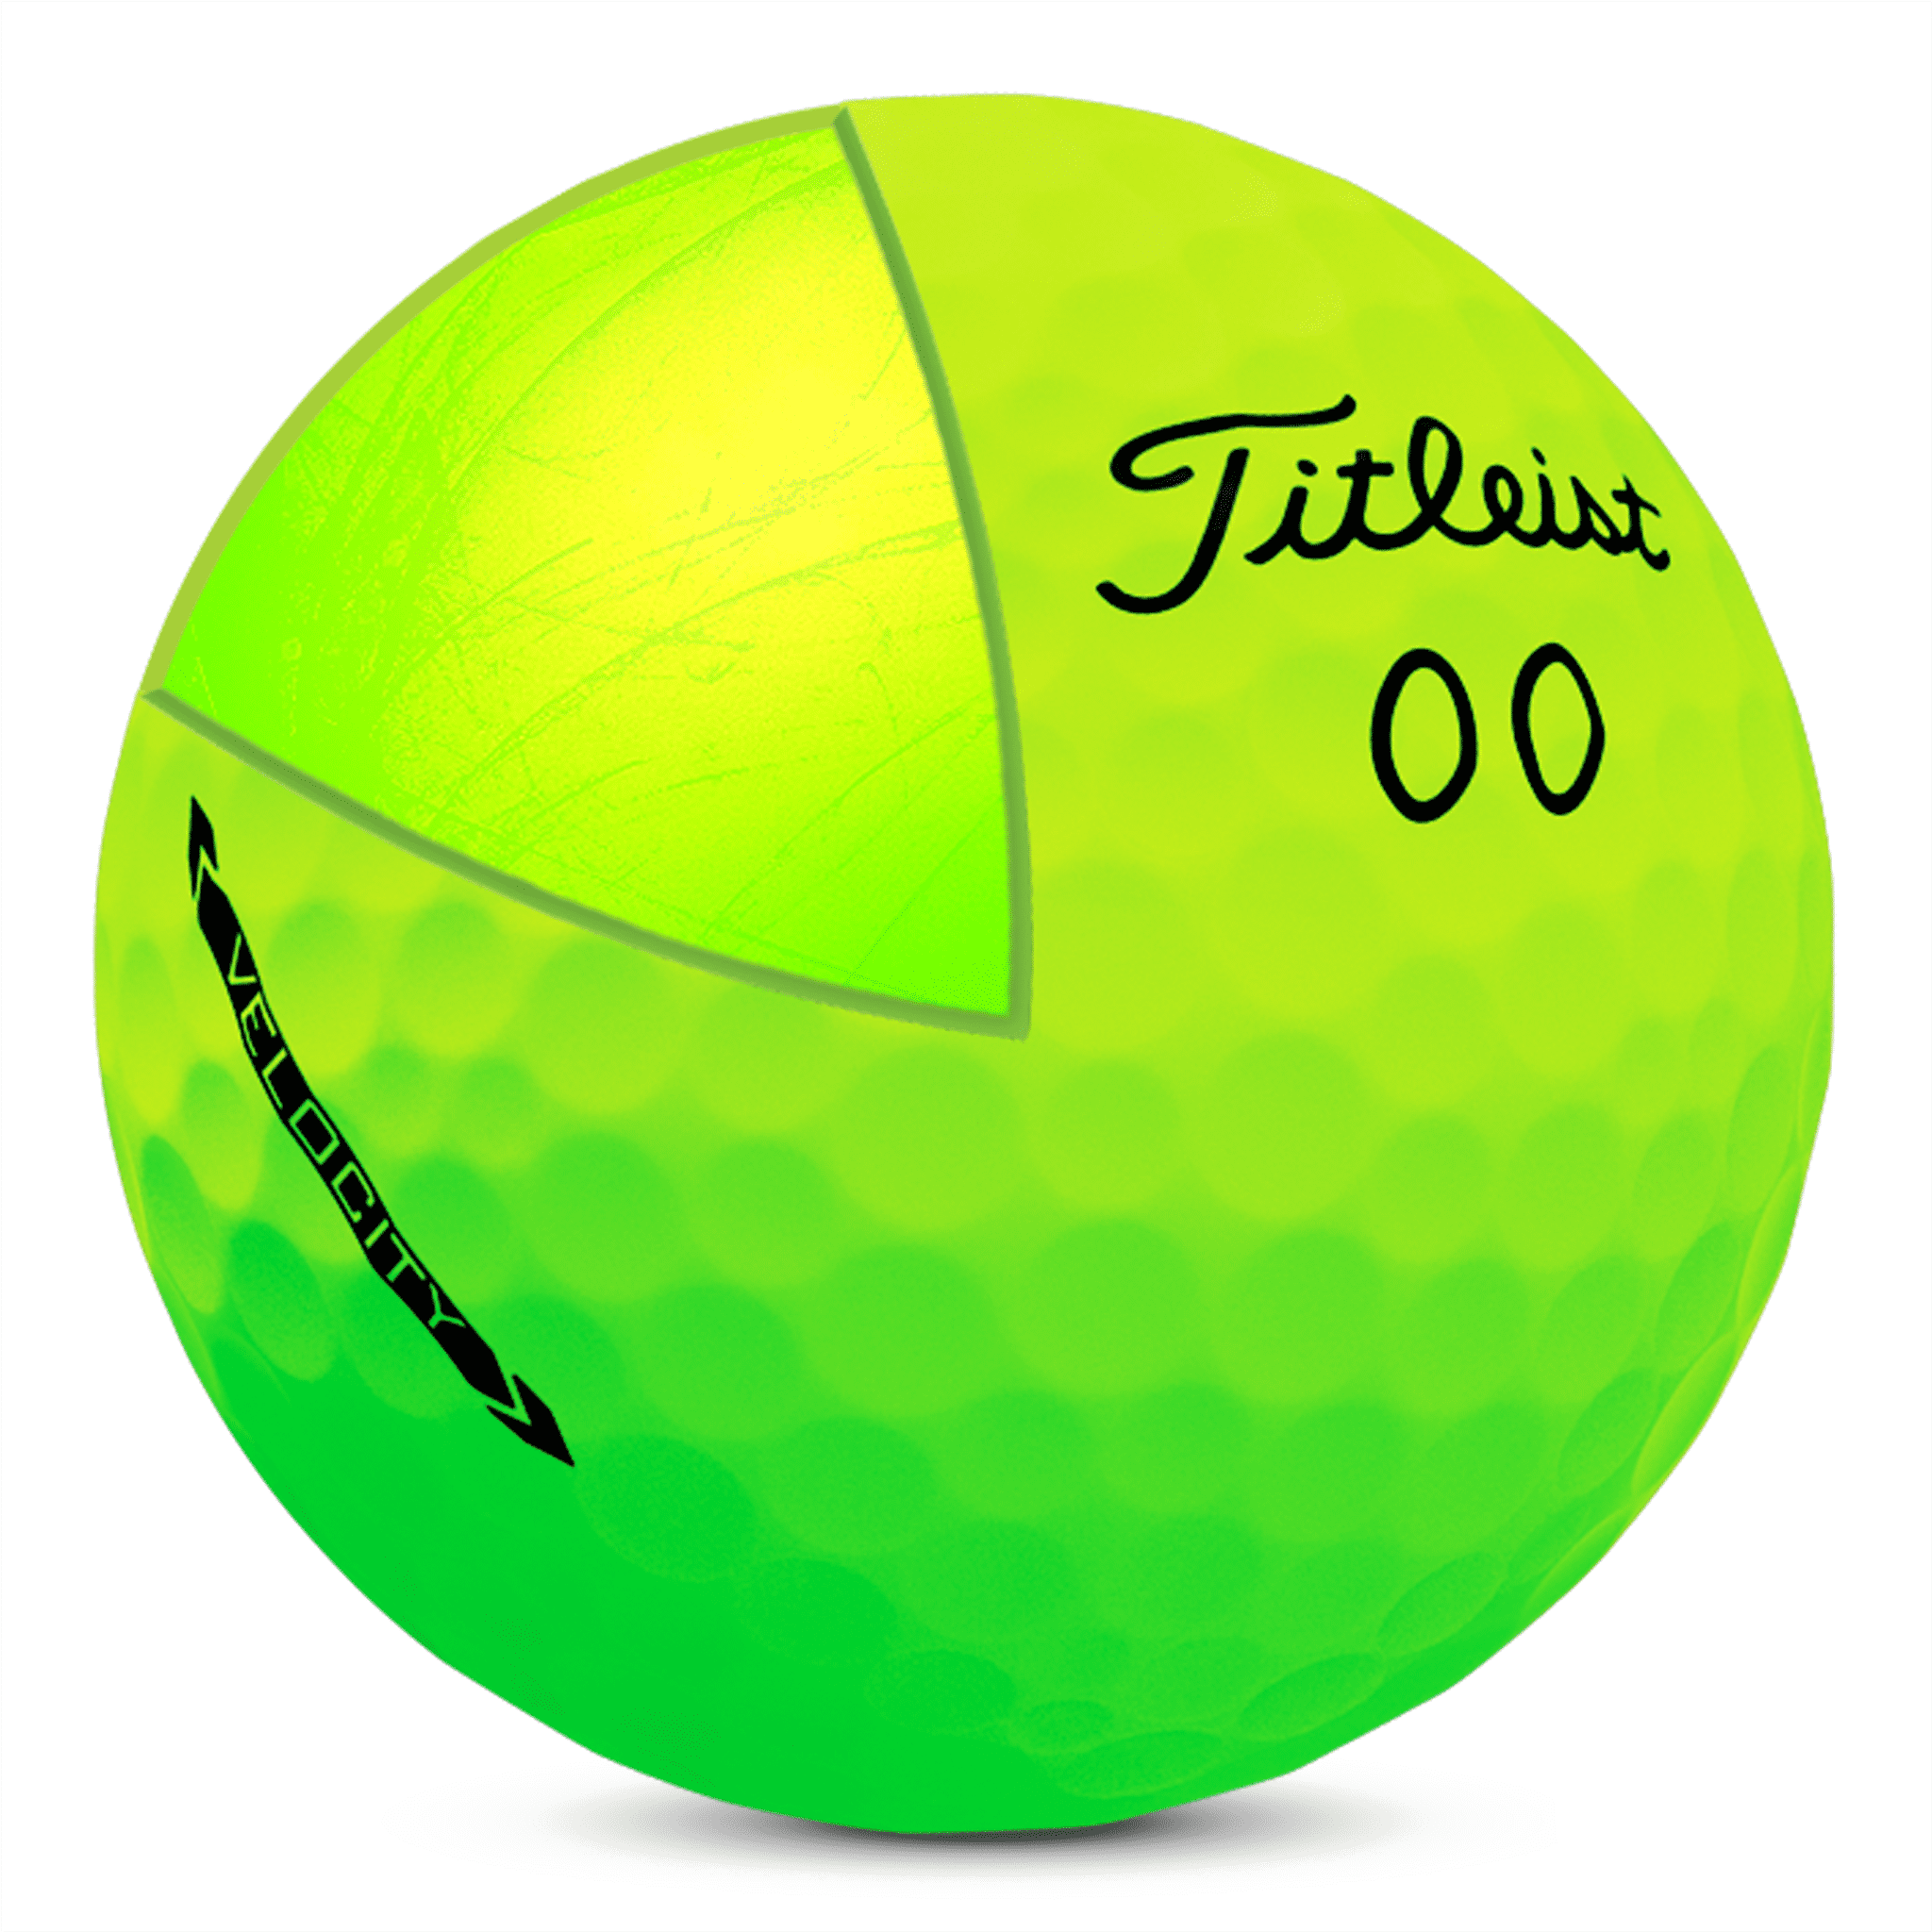 Golf Ball Green - HTV Pattern